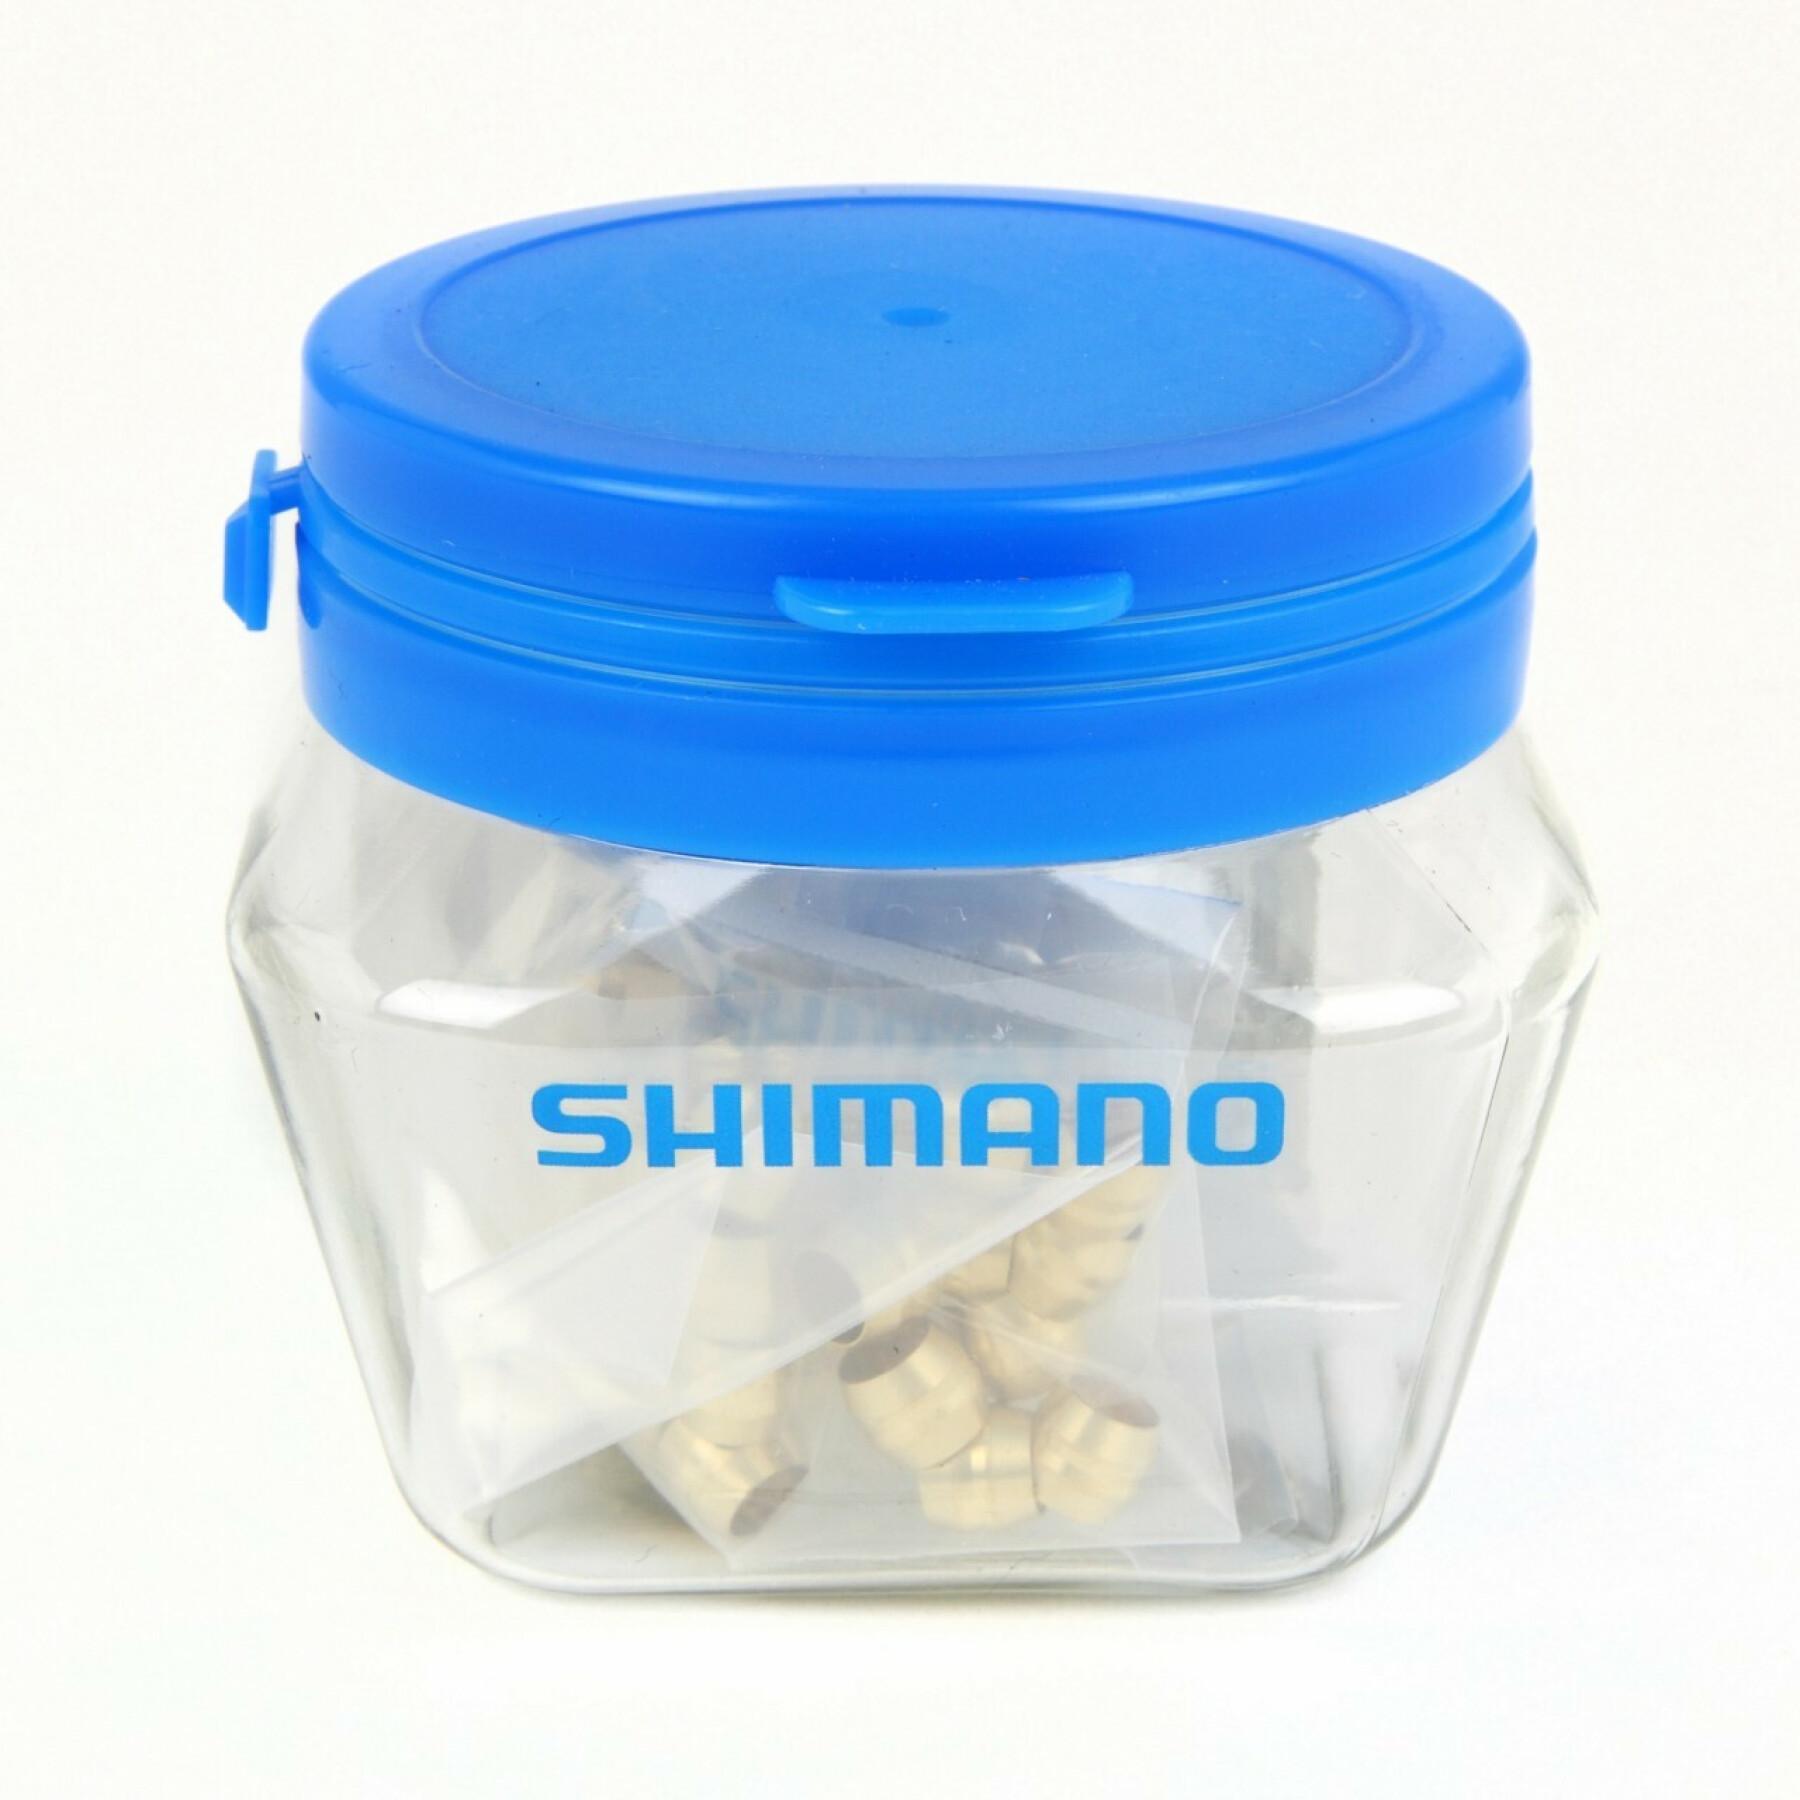 50 peças de azeitonas e inserto de ligação sm-bh59 Shimano